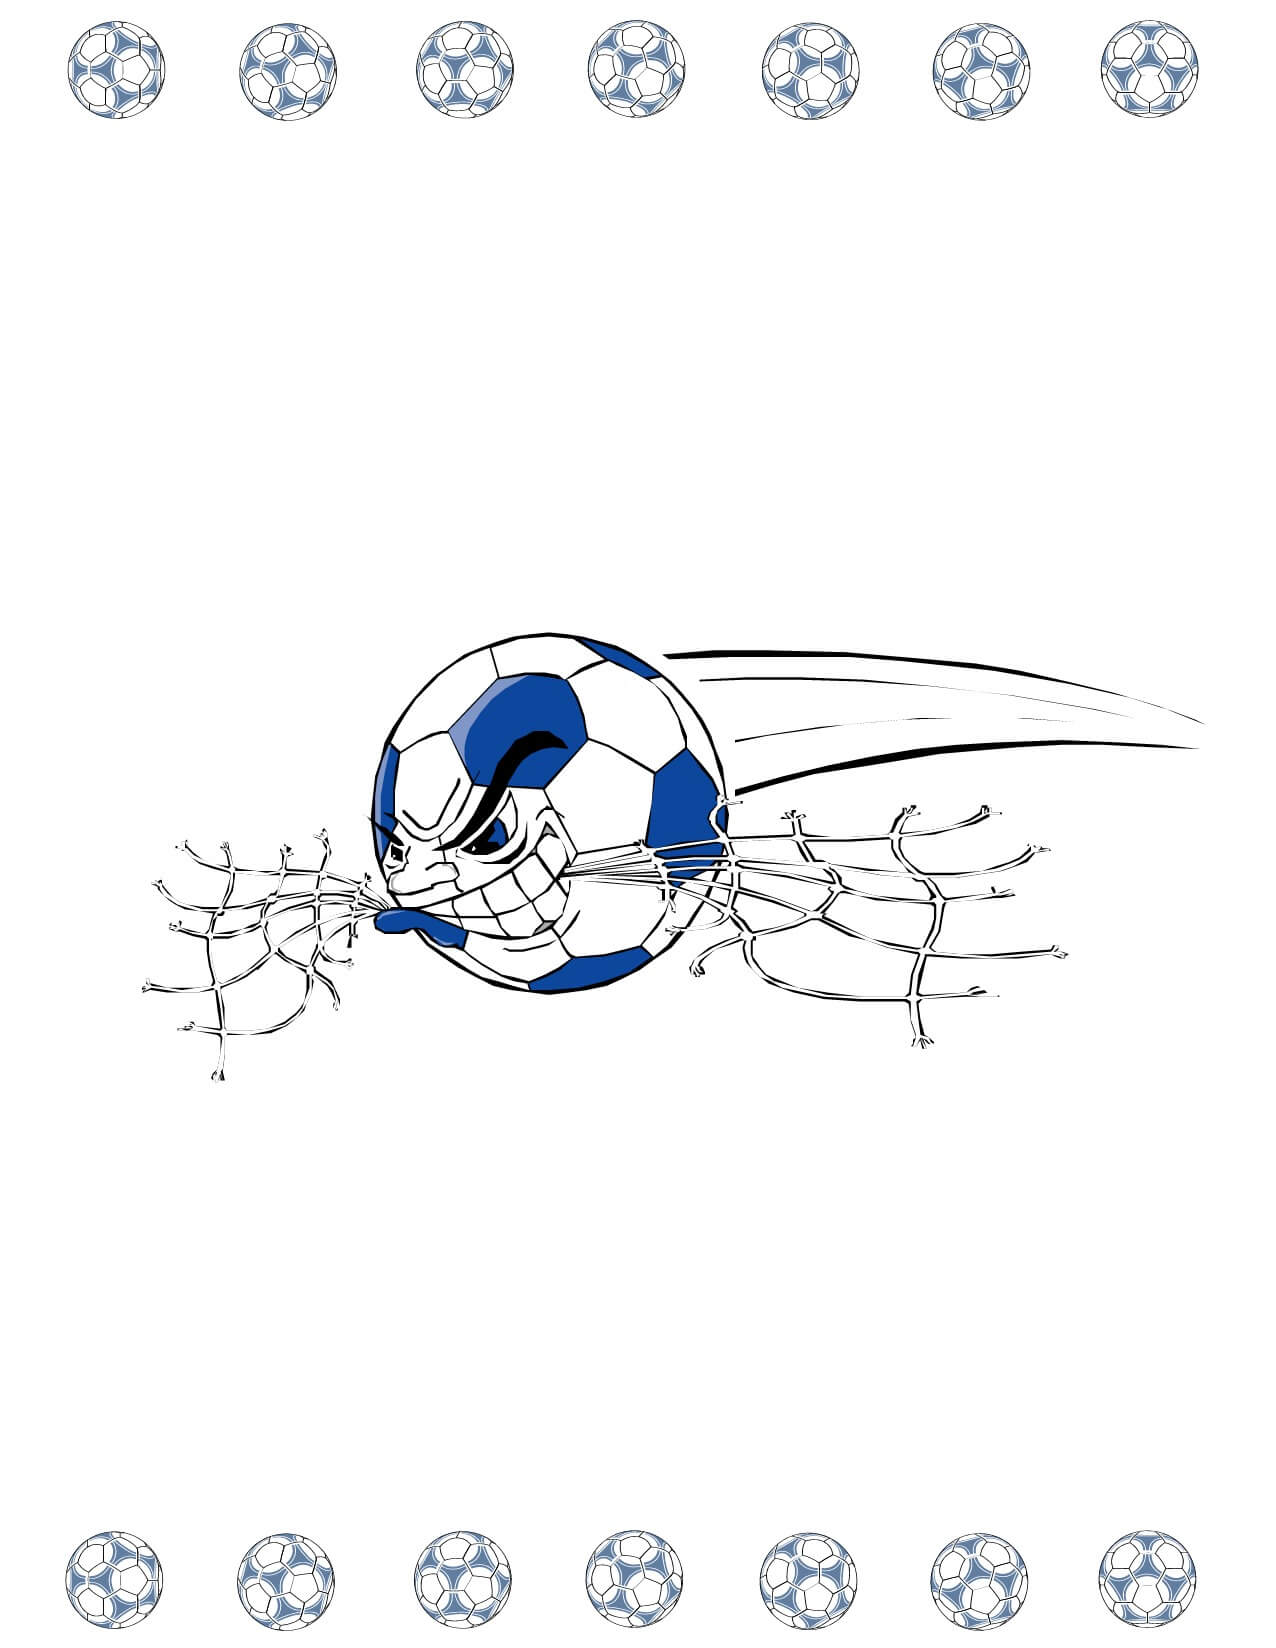 Soccer Award Certificate Maker: Make Personalized Soccer Awards With Soccer Certificate Template